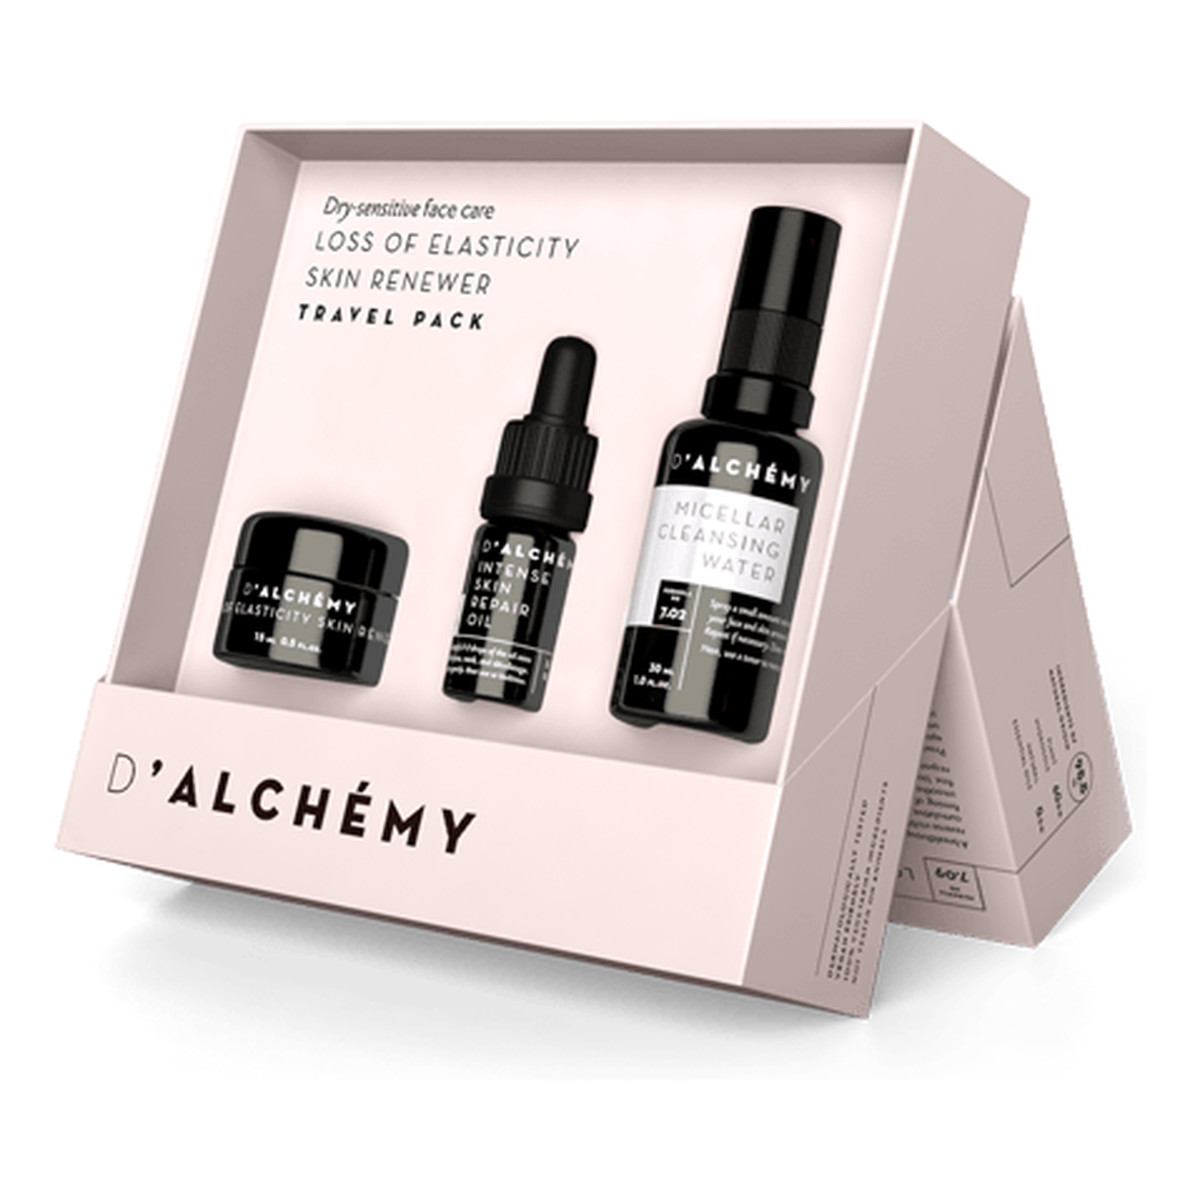 D'Alchemy Loss of Elasticity Skin Renewer zestaw kosmetyków